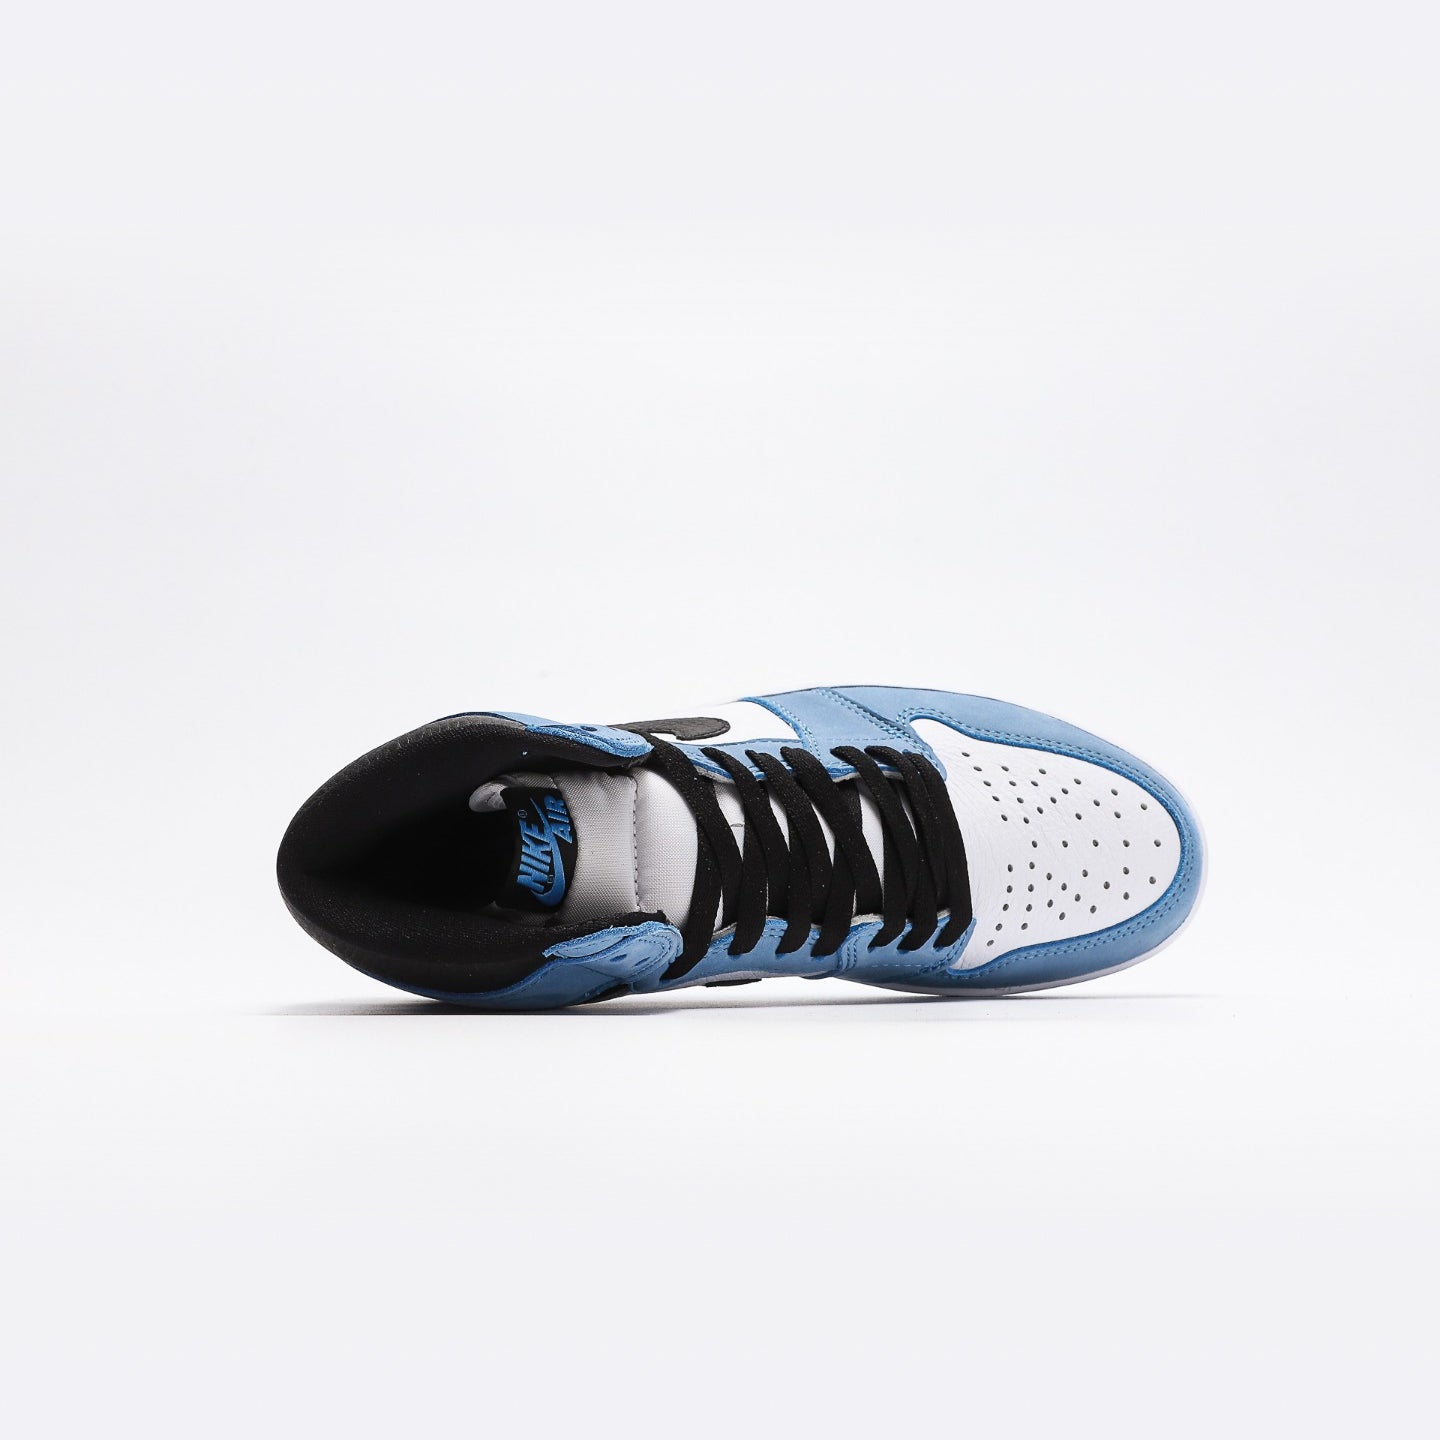 Nike Air Jordan 1 Retro High “University Blue”